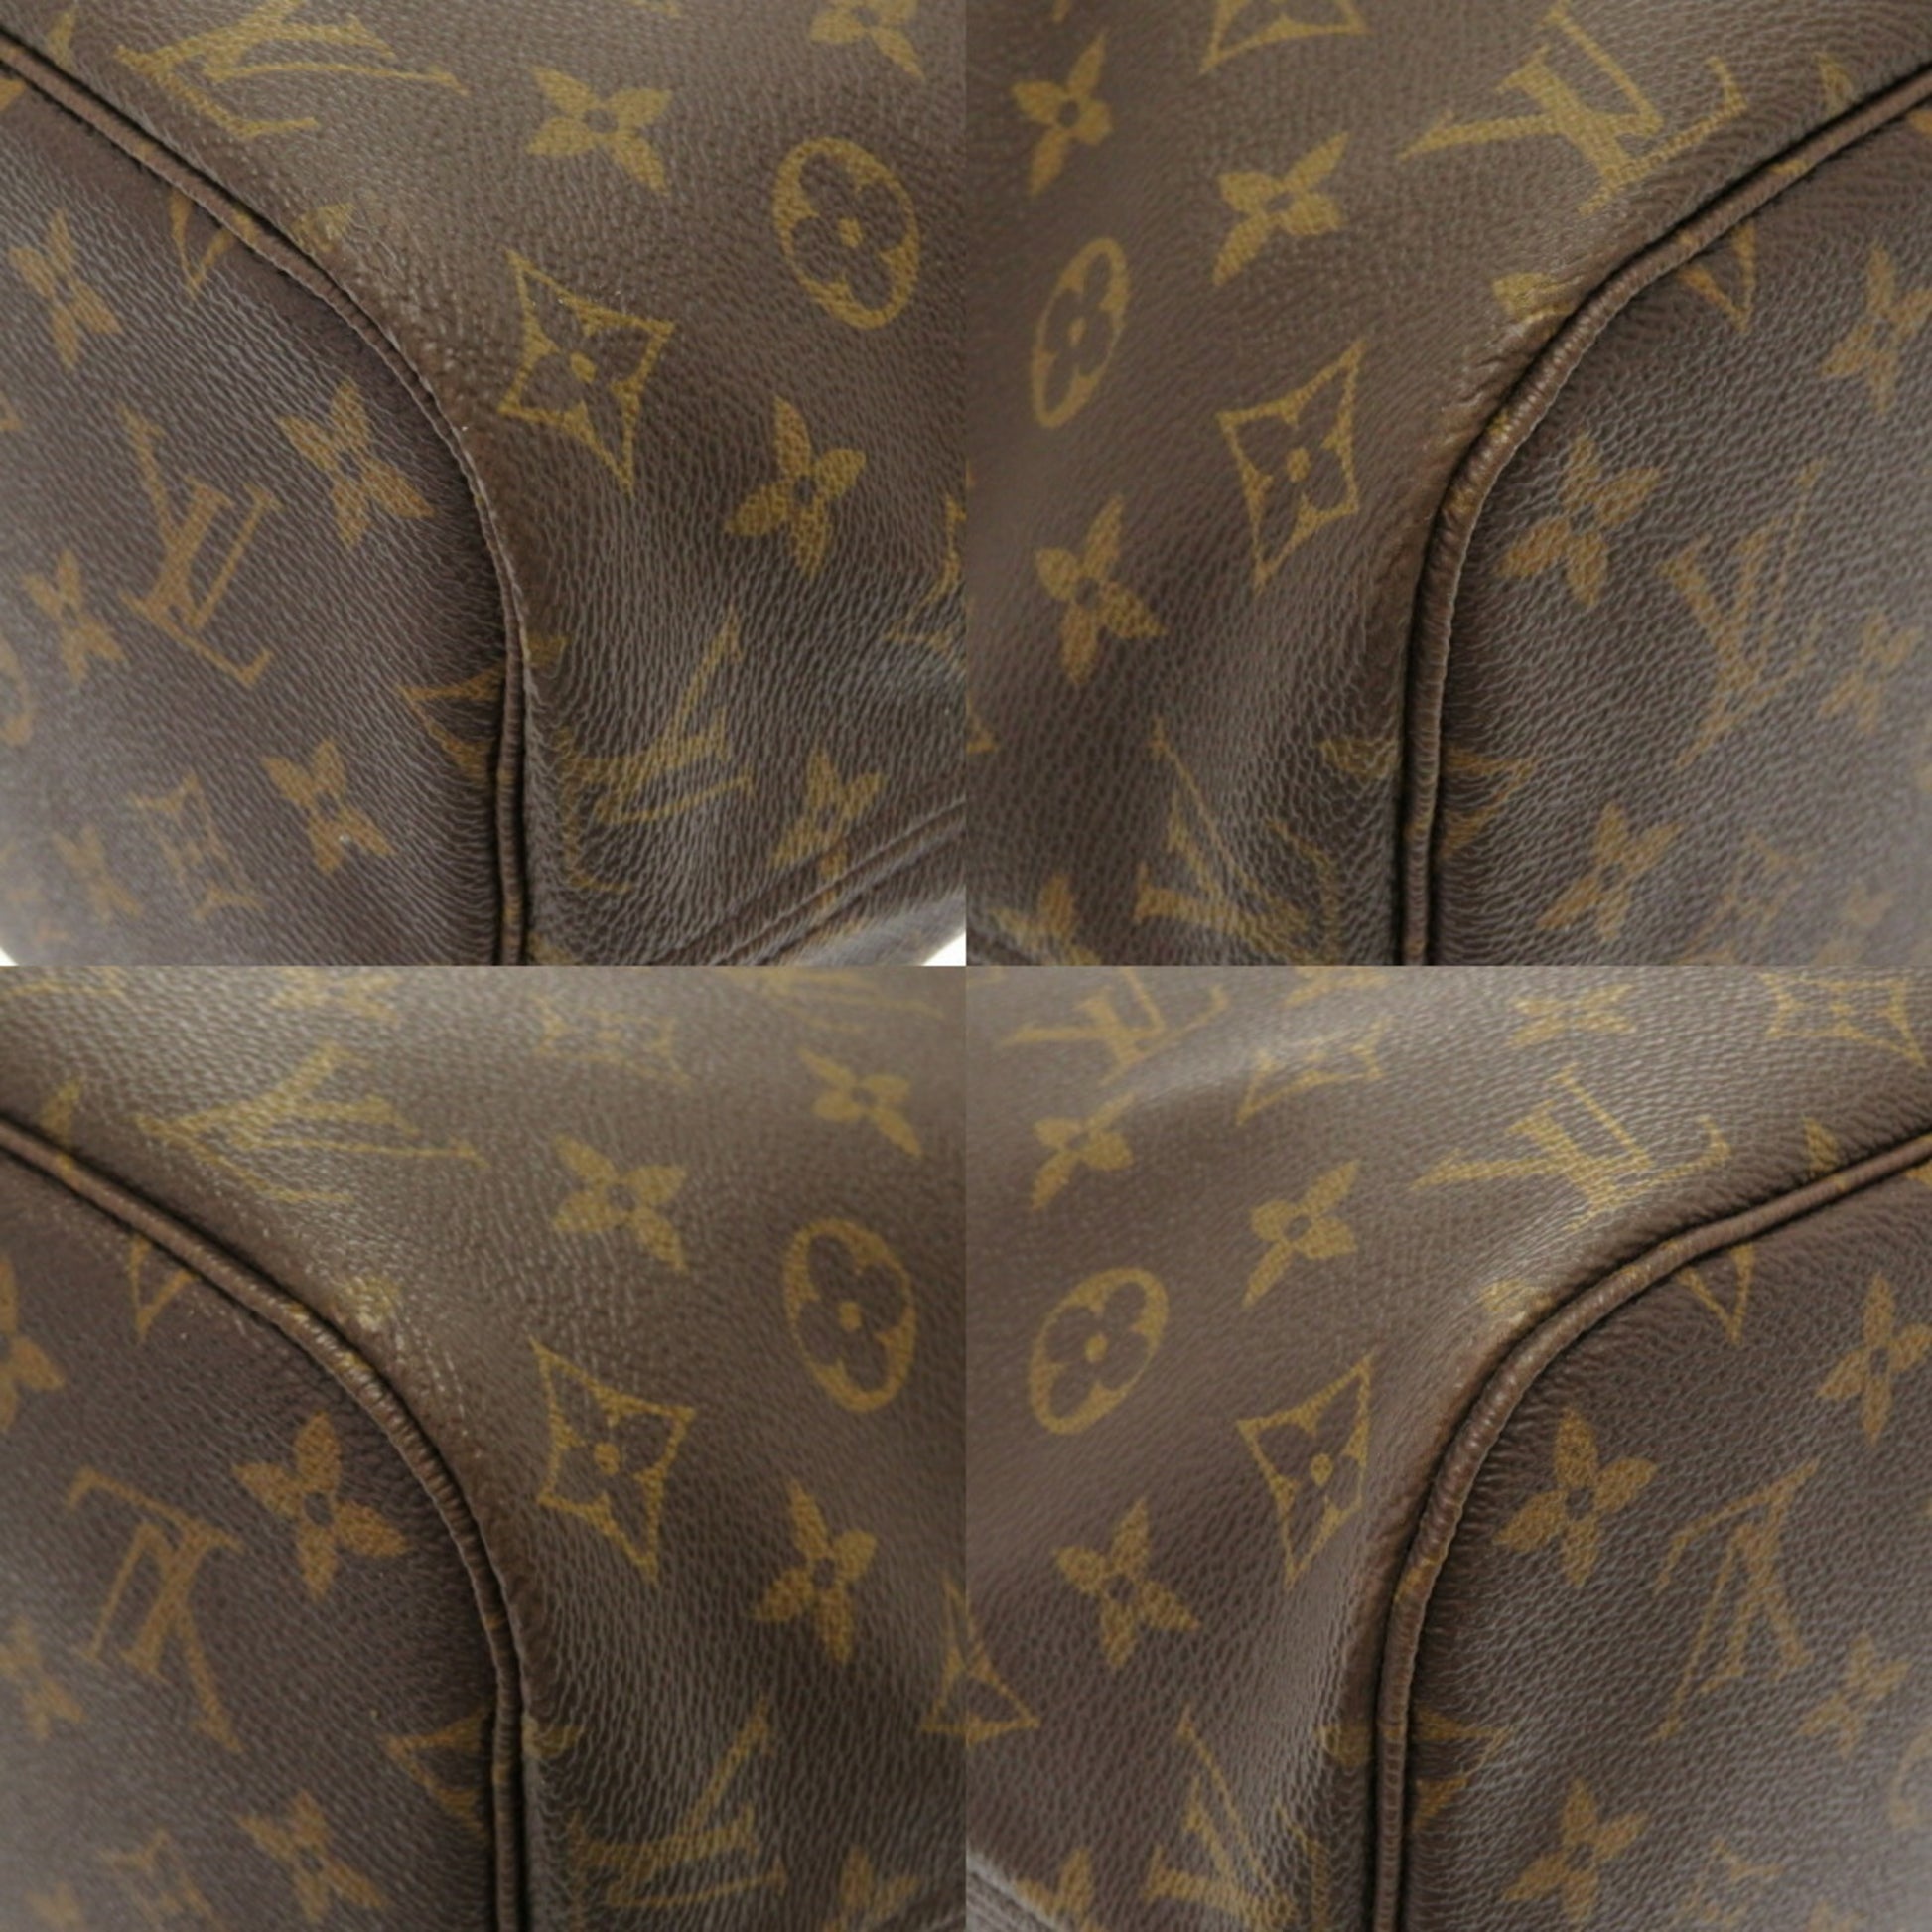 ep_vintage luxury Store - Monogram - Bag - Neverfull - Louis - Vuitton -  M40156 – dct - MM - Tote - Bleu Louis Vuitton Sacs à main